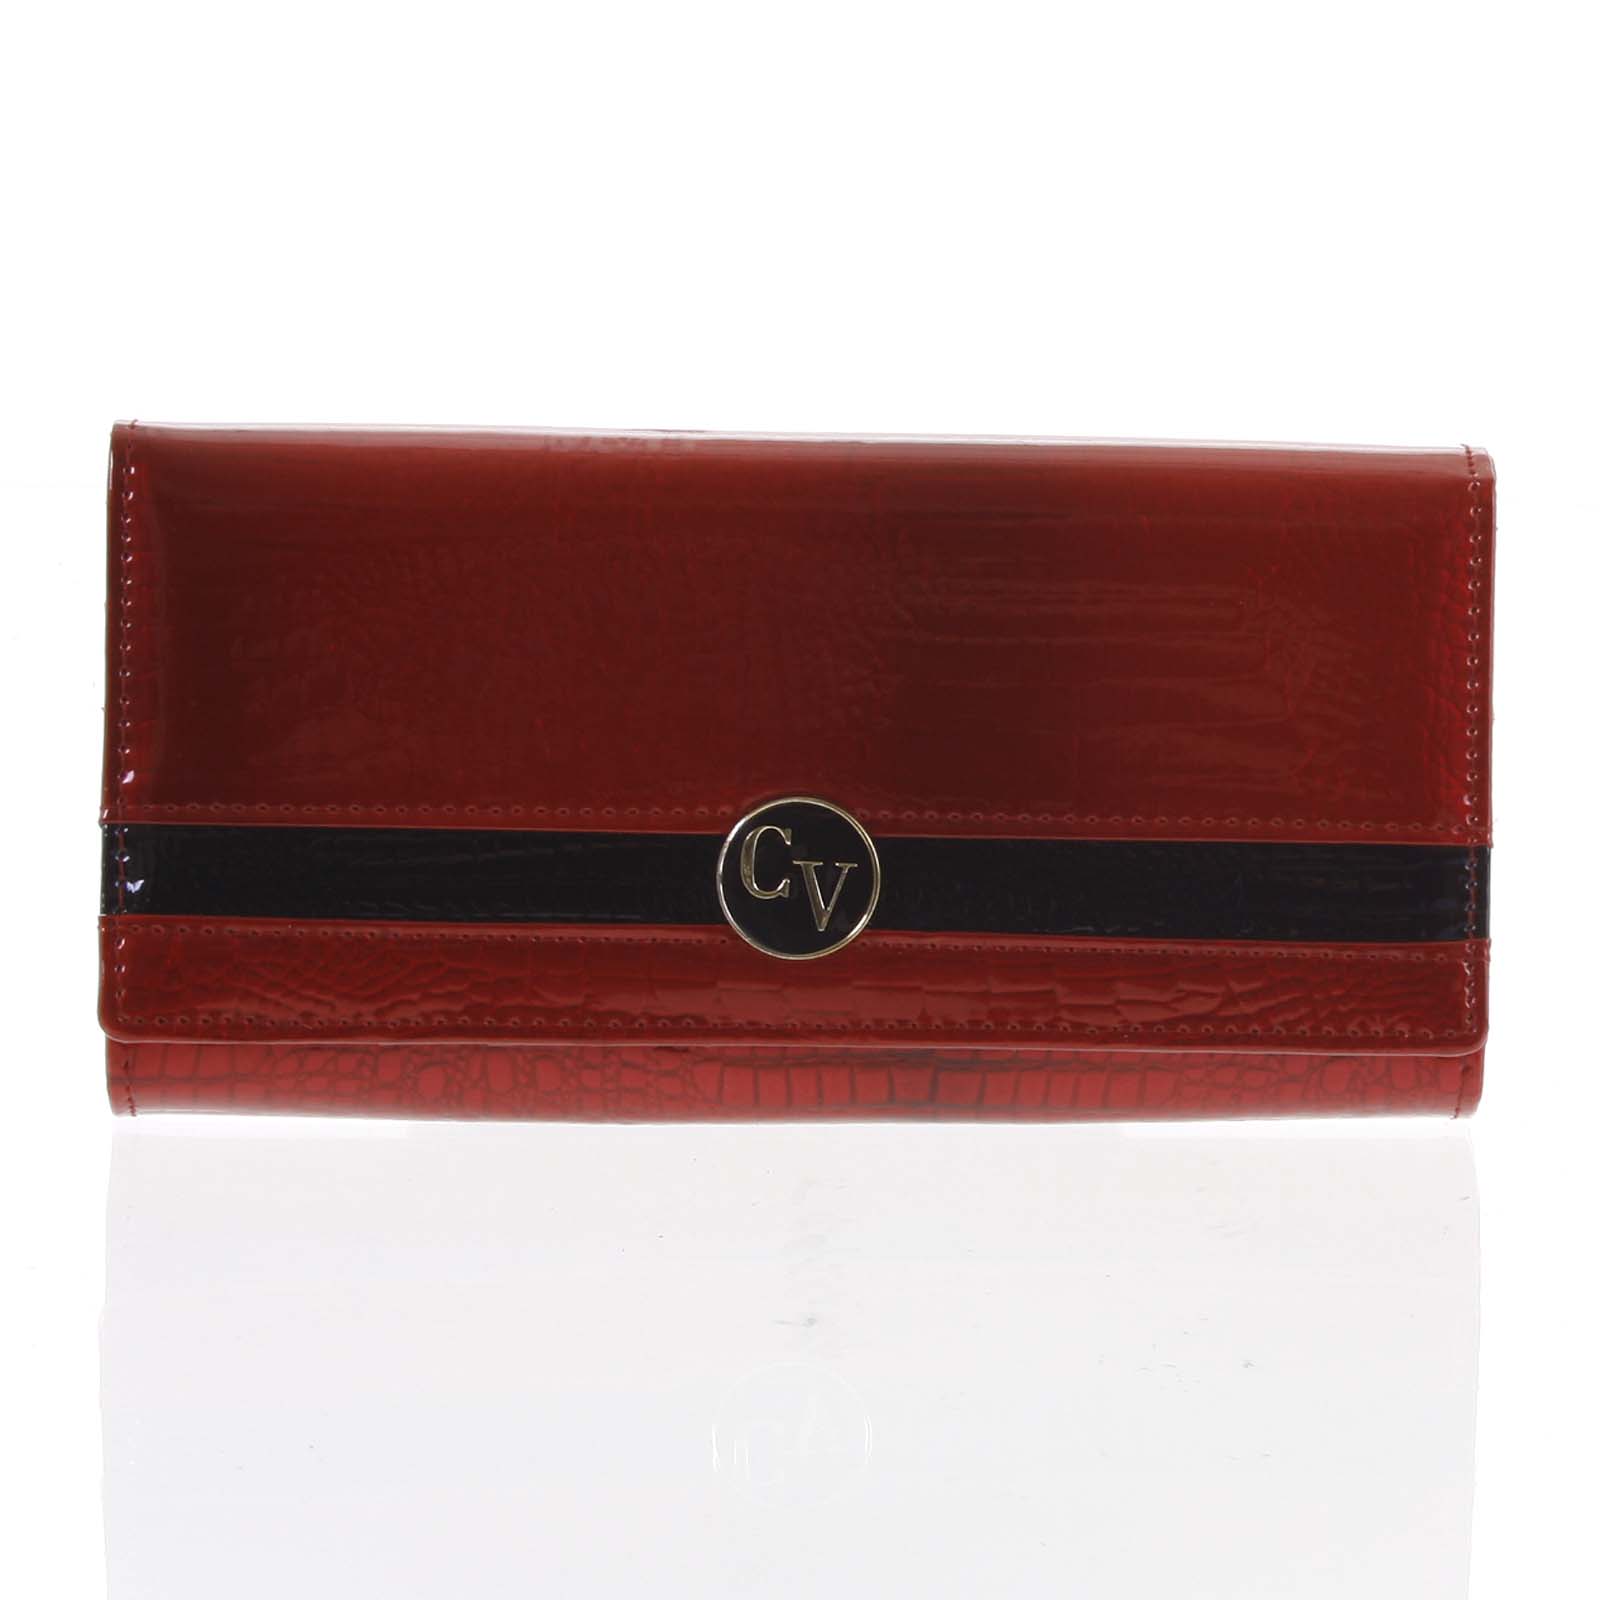 Dámska peňaženka kožená lakovaná červená - Cavaldi H242